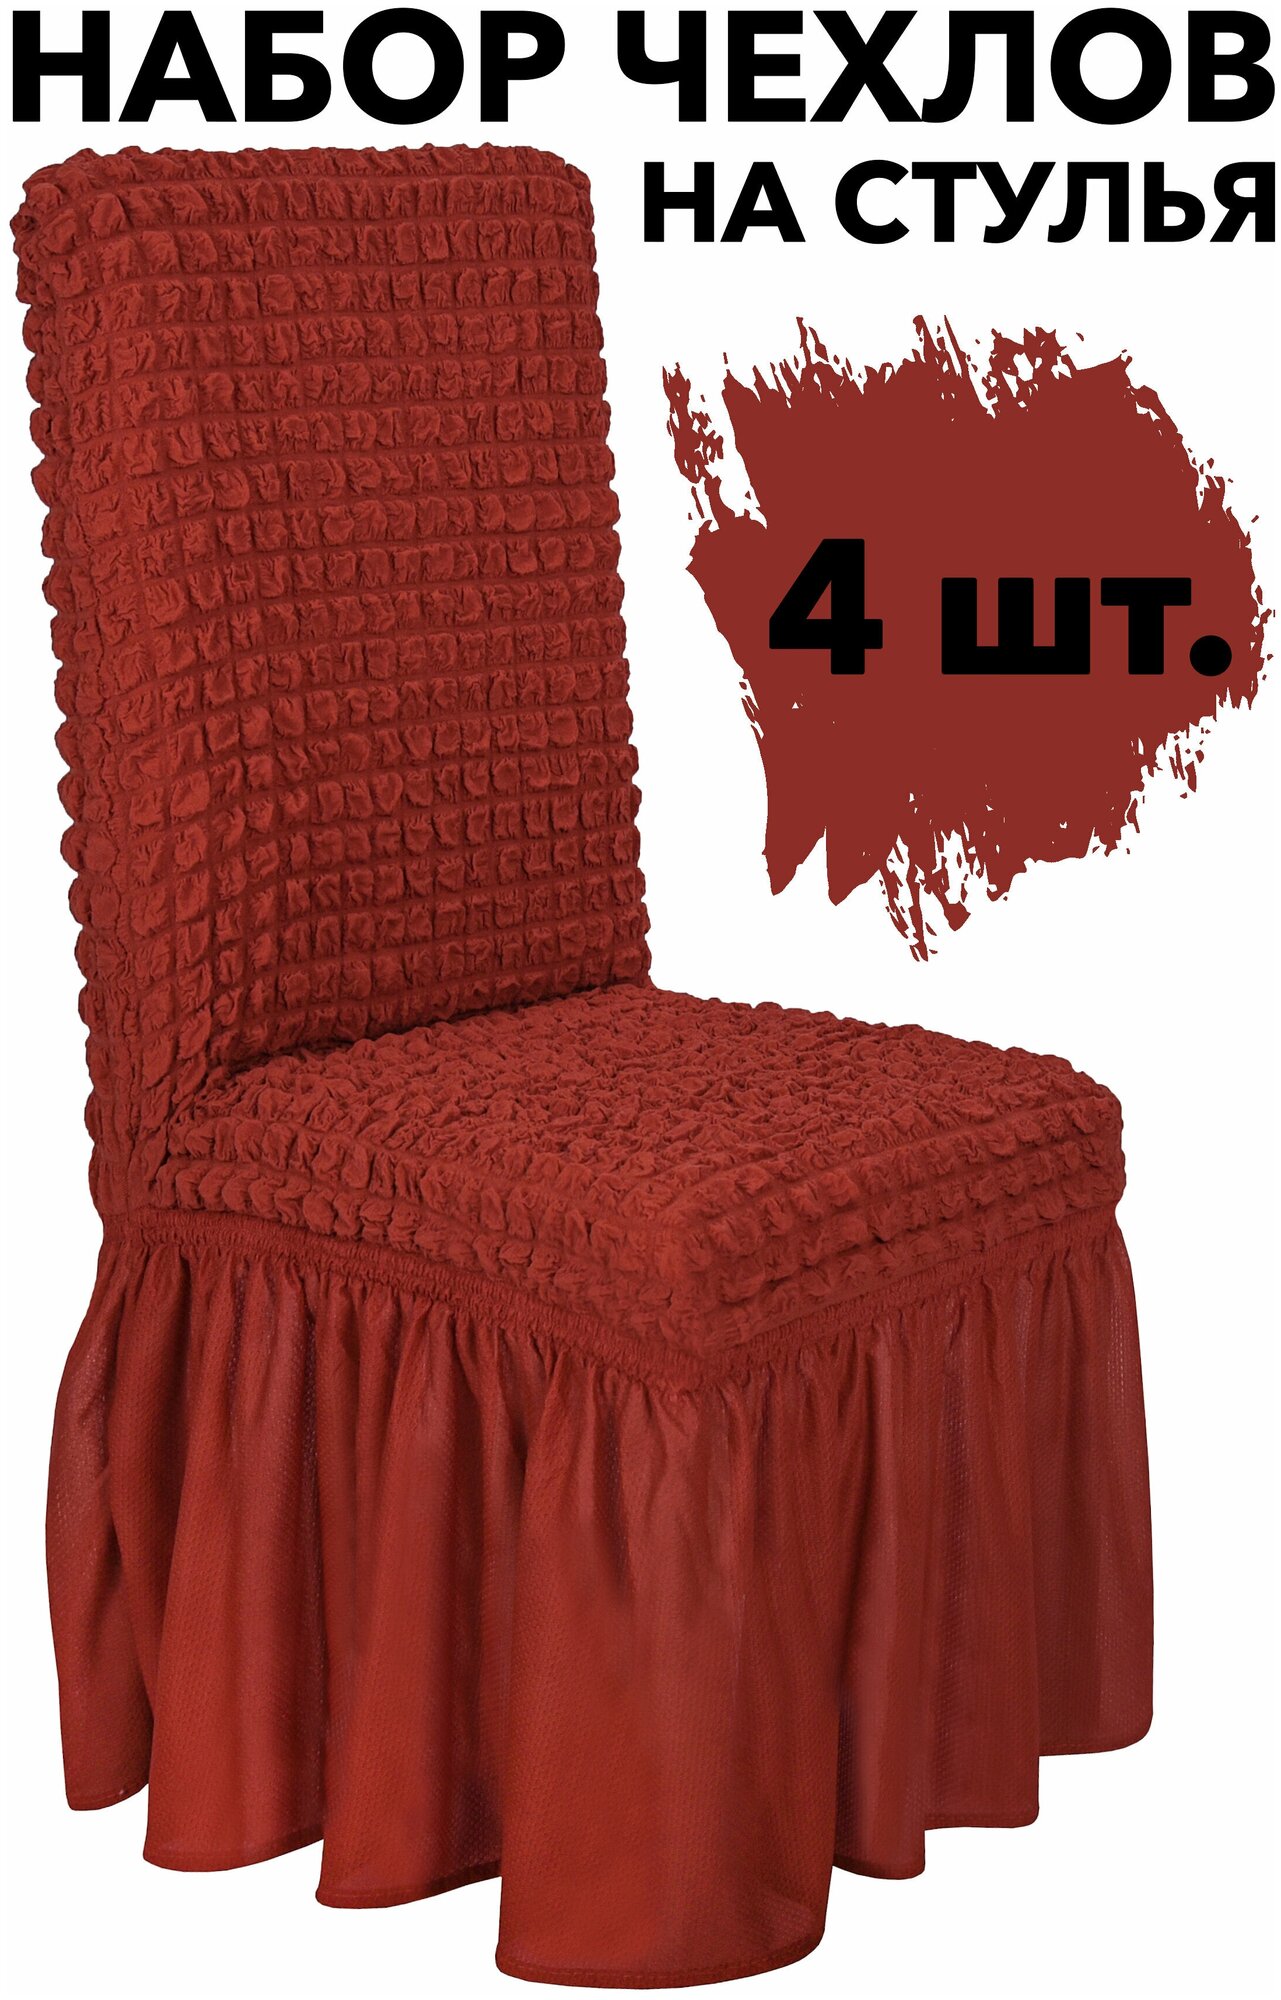 Чехлы для стульев со спинкой 4 шт набор универсальный на кухню однотонный, цвет Терракот